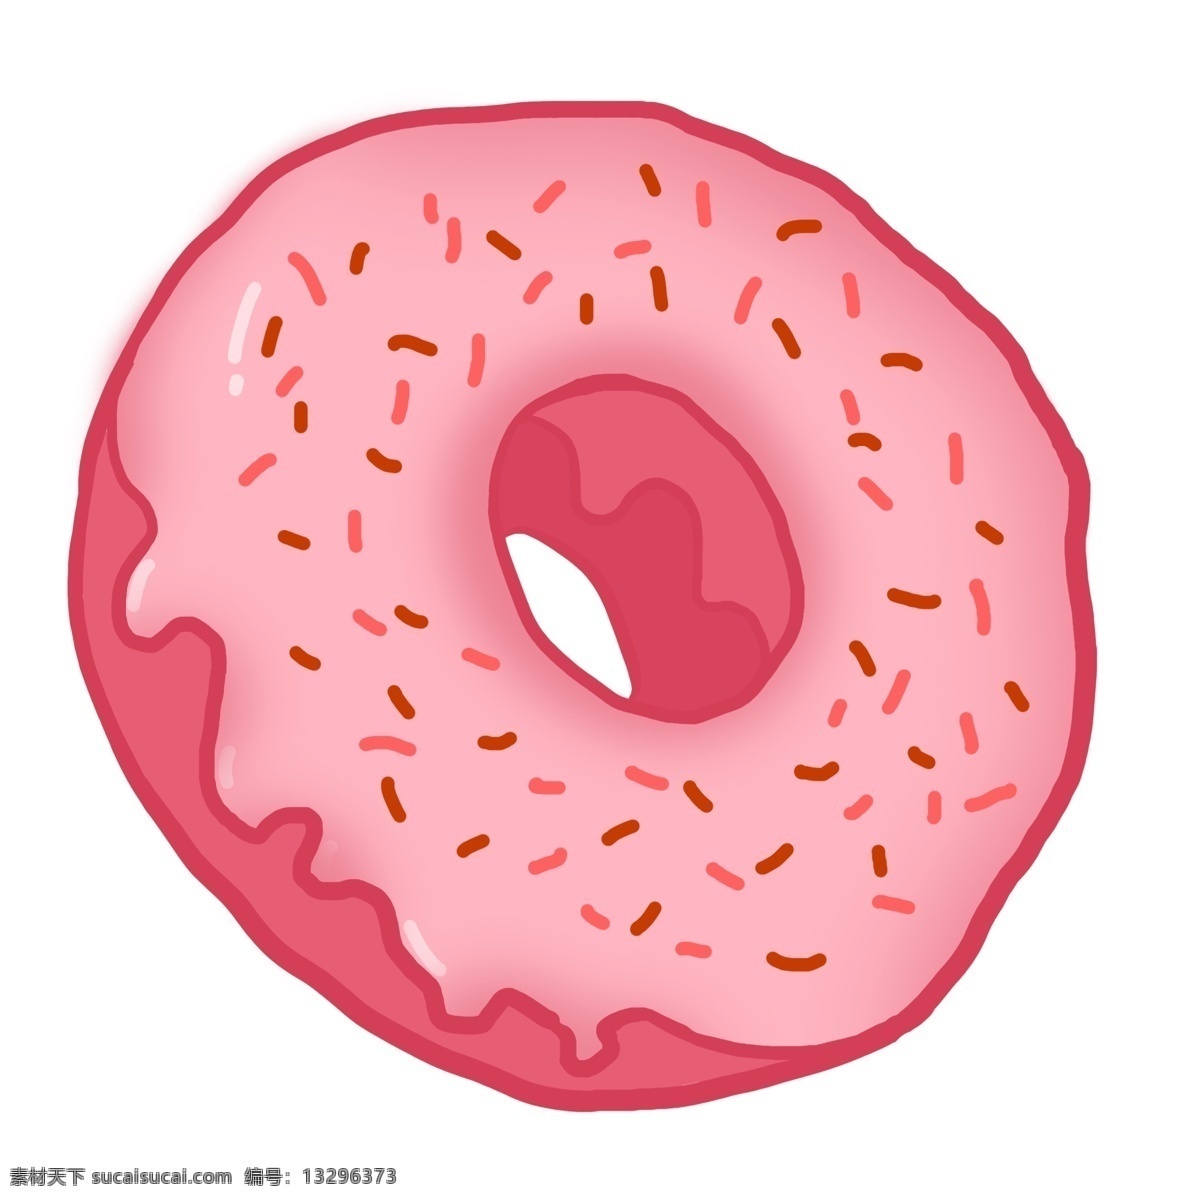 手绘 粉红色 甜甜 圈 插画 粉红甜甜圈 粉色甜甜圈 烘焙 粉色美食 糕点 甜品 甜甜圈甜品 圆形食品